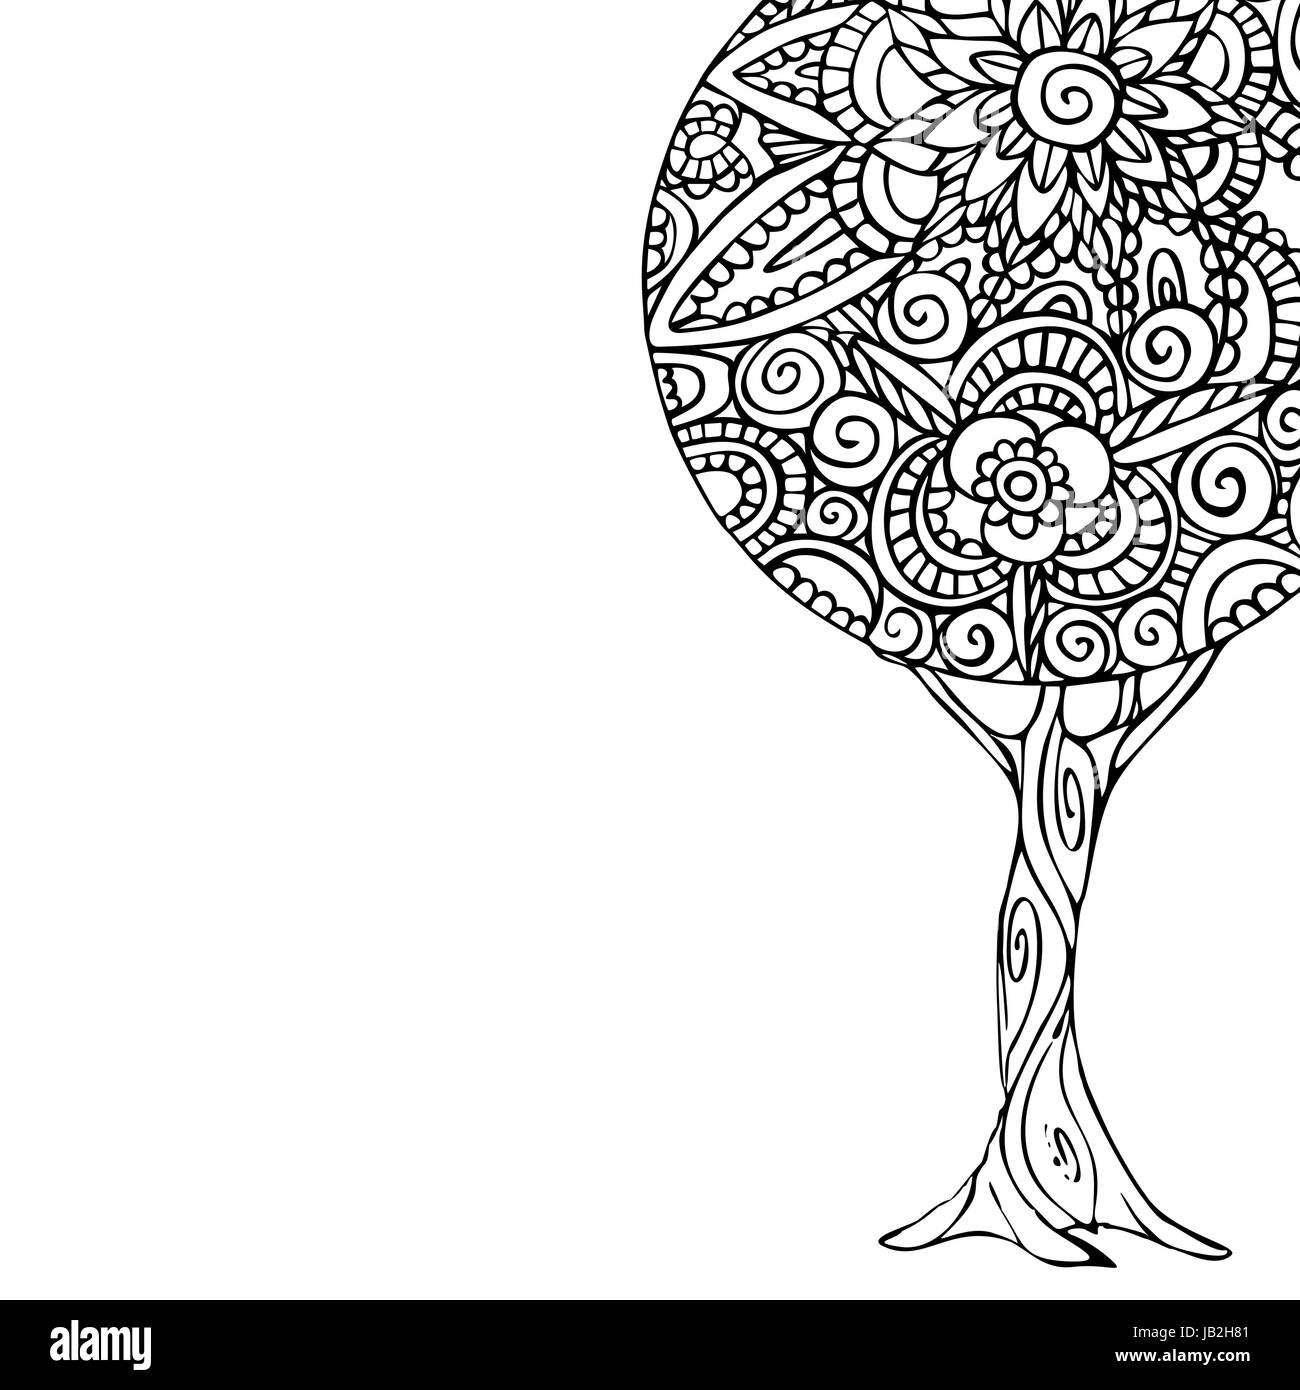 Illustration de l'arbre de noir et de blanc à la main, design mandala décoration florale traditionnelle de style ethnique. Vecteur EPS10. Illustration de Vecteur